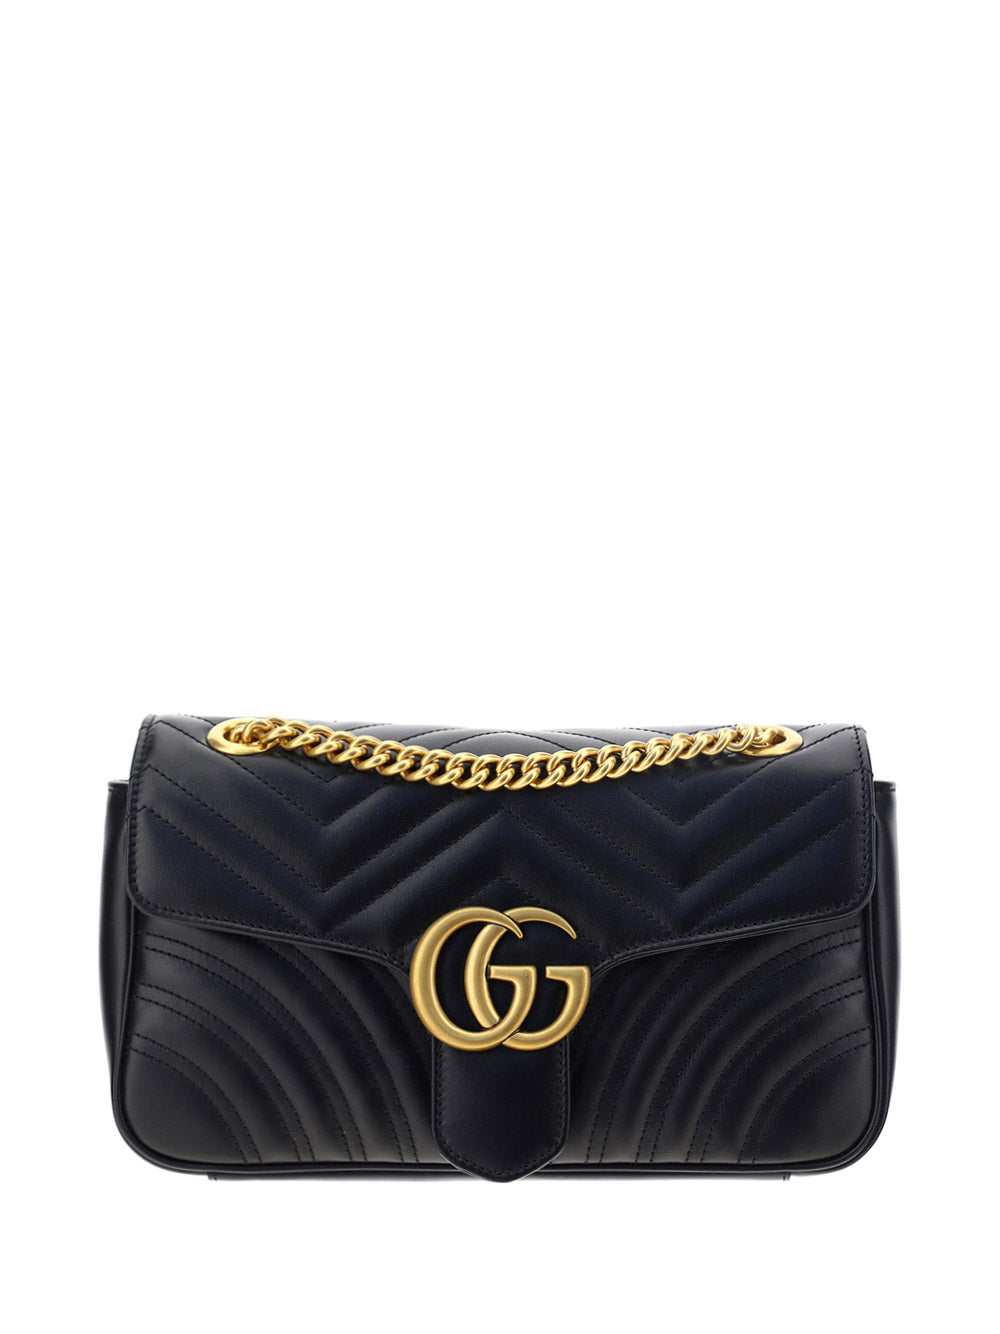 Gucci GG Marmont 2.0 Matelassé Leather Shoulder Bag - Black - One Size